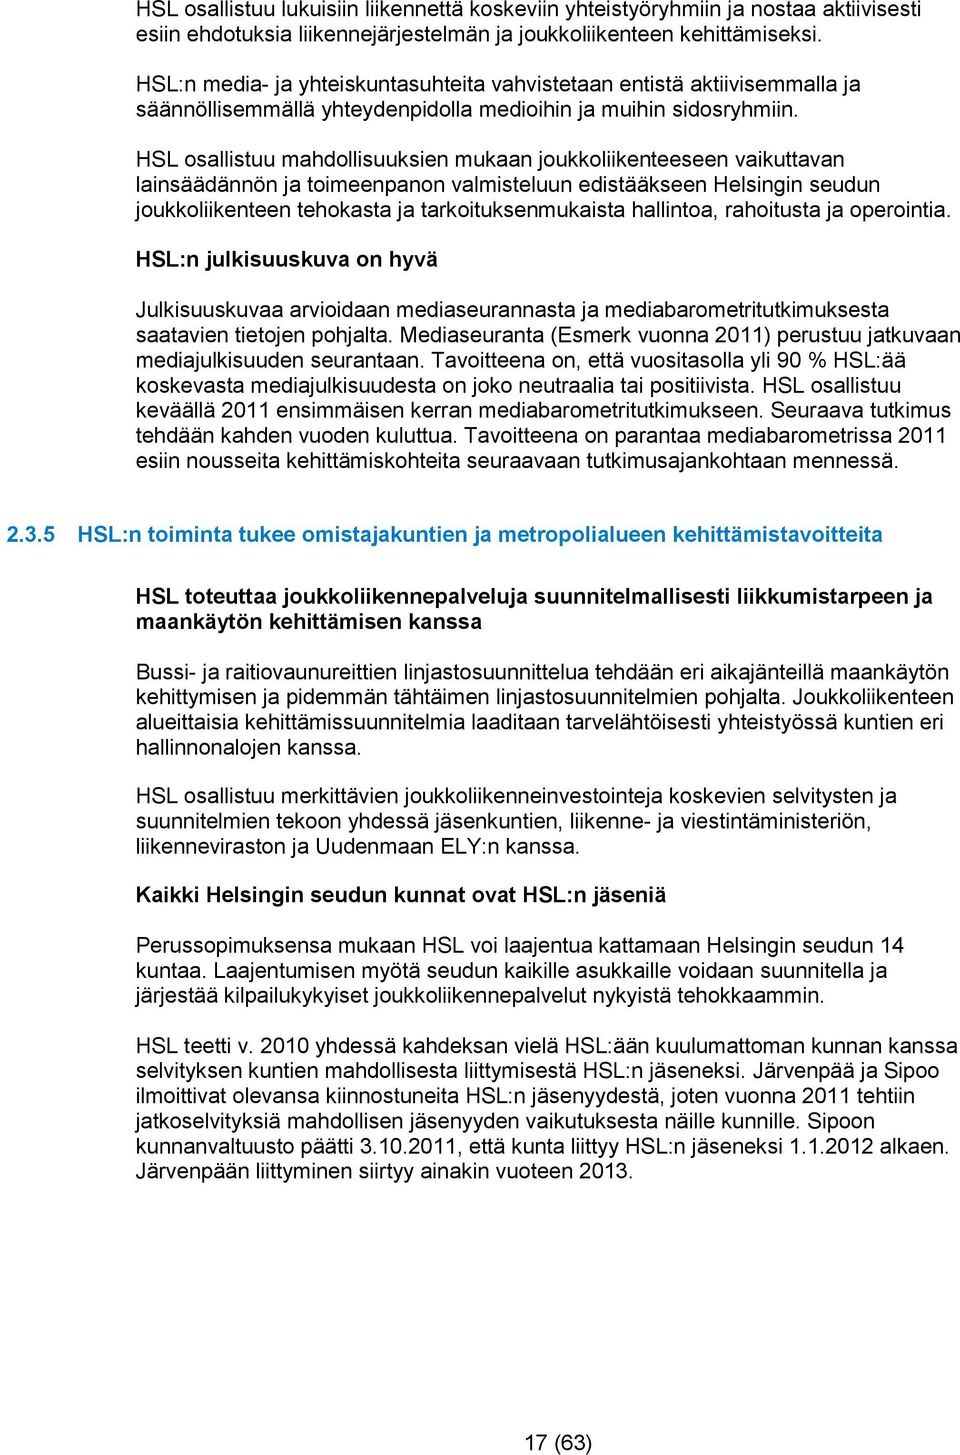 HSL osallistuu mahdollisuuksien mukaan joukkoliikenteeseen vaikuttavan lainsäädännön ja toimeenpanon valmisteluun edistääkseen Helsingin seudun joukkoliikenteen tehokasta ja tarkoituksenmukaista